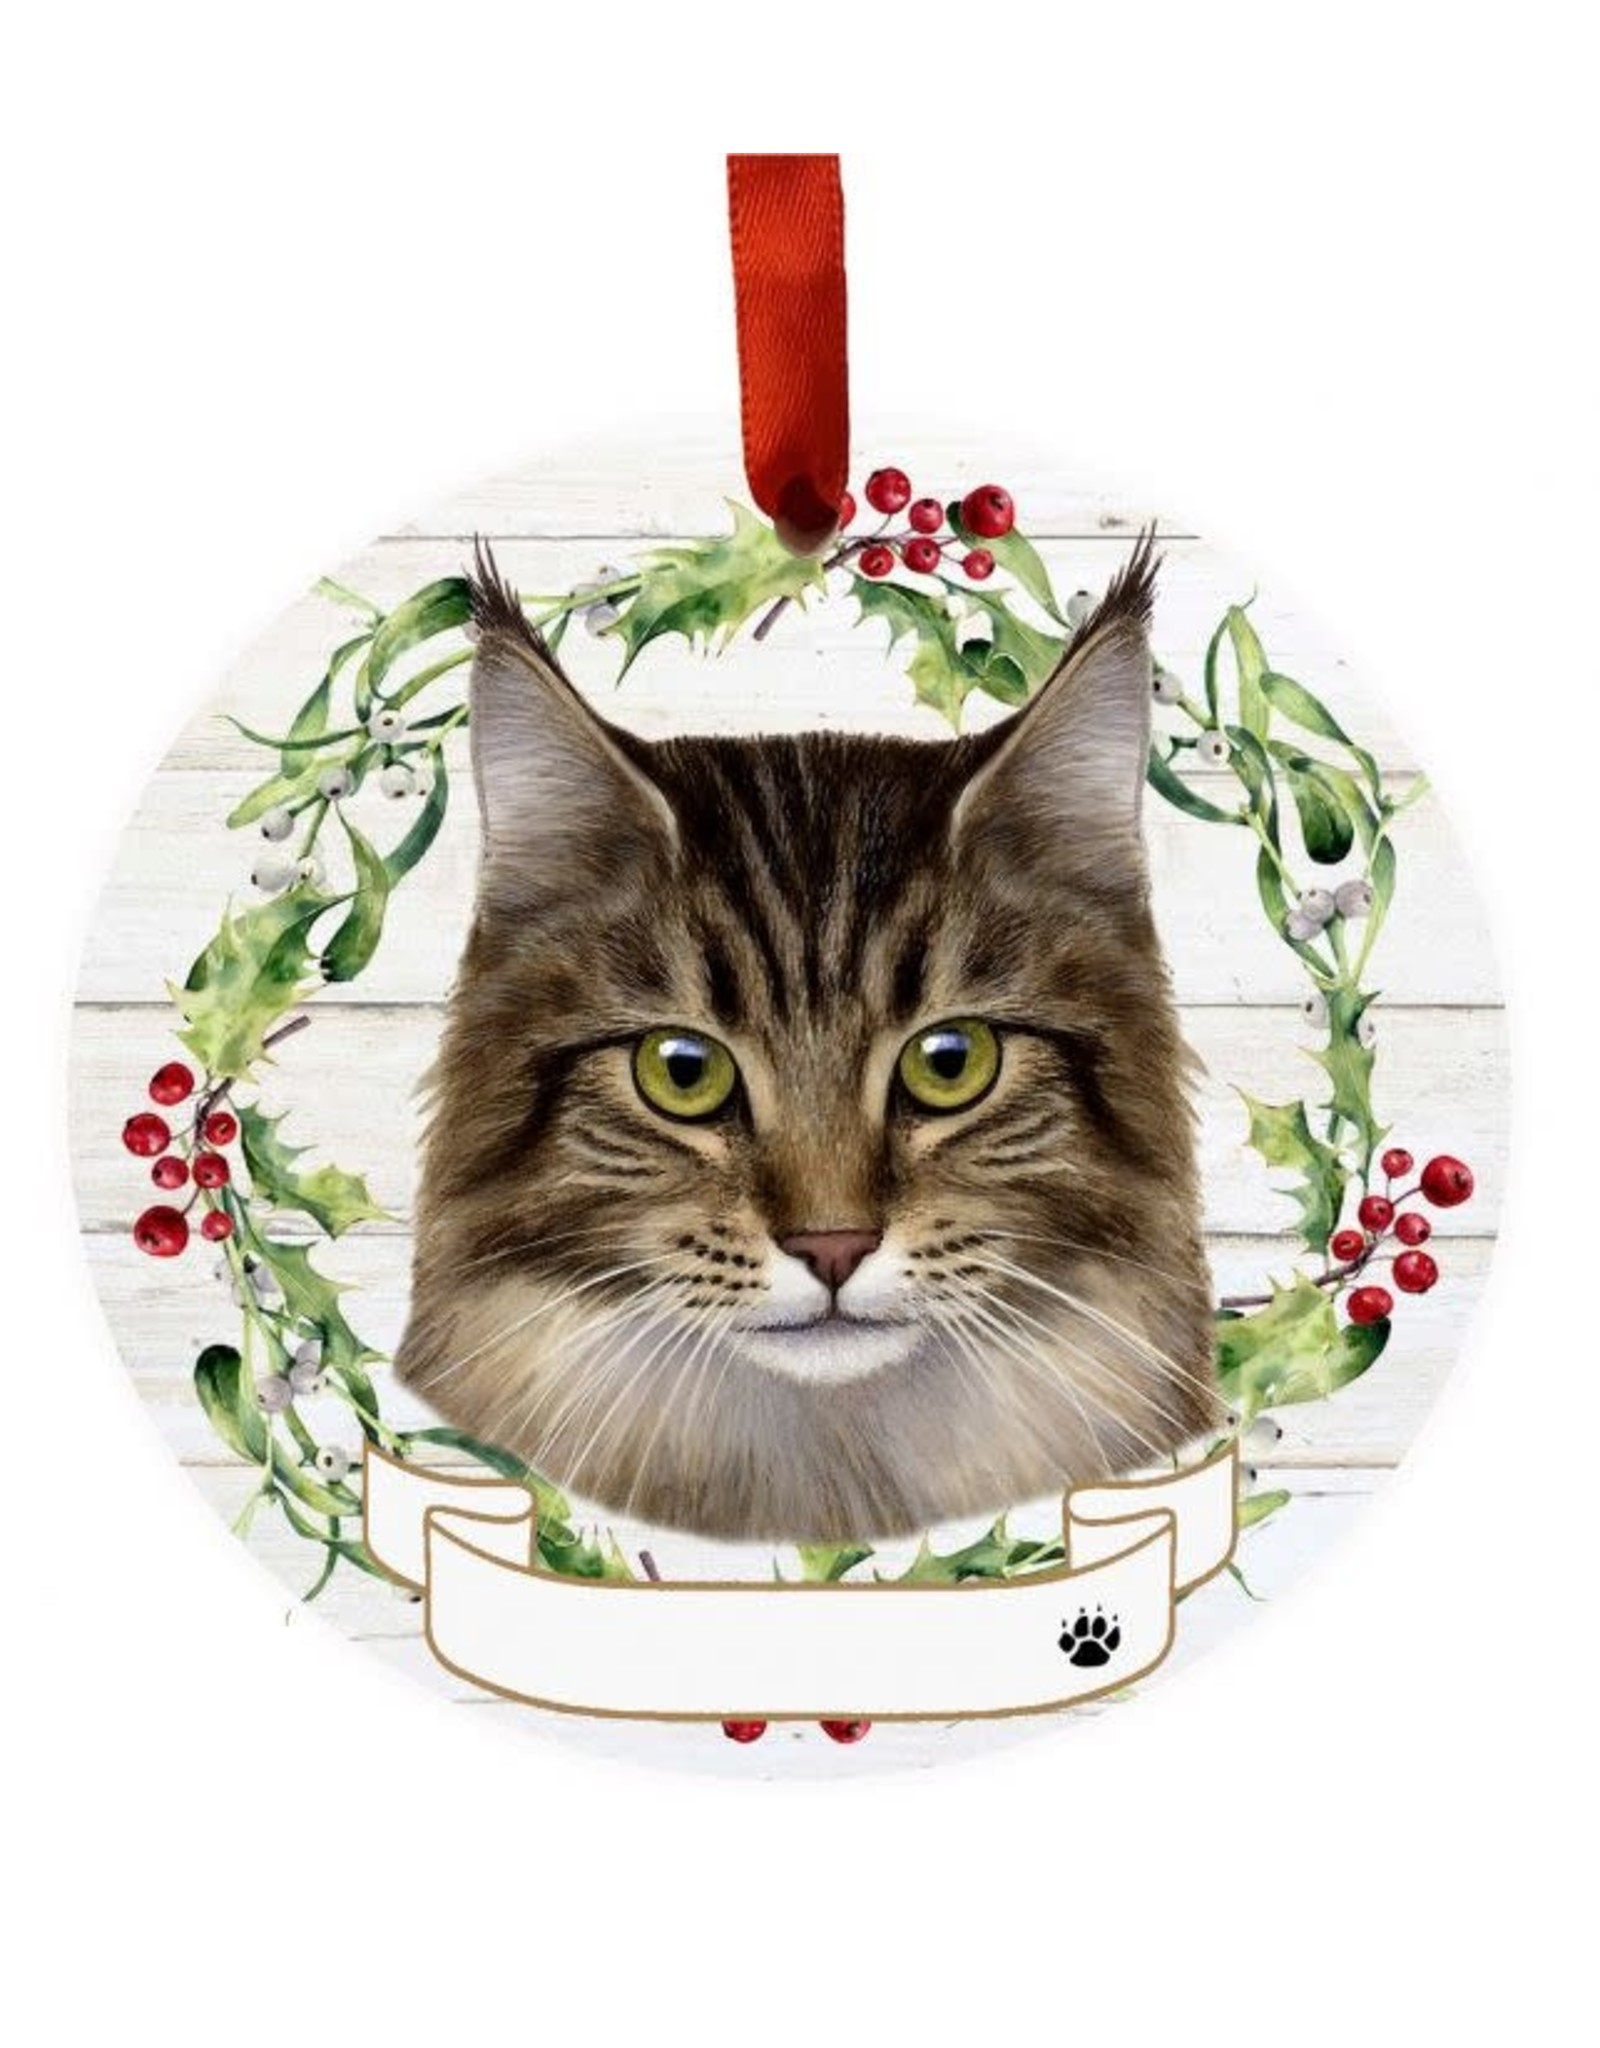 E&S Pets Maine Coon Cat Wreath Ornament